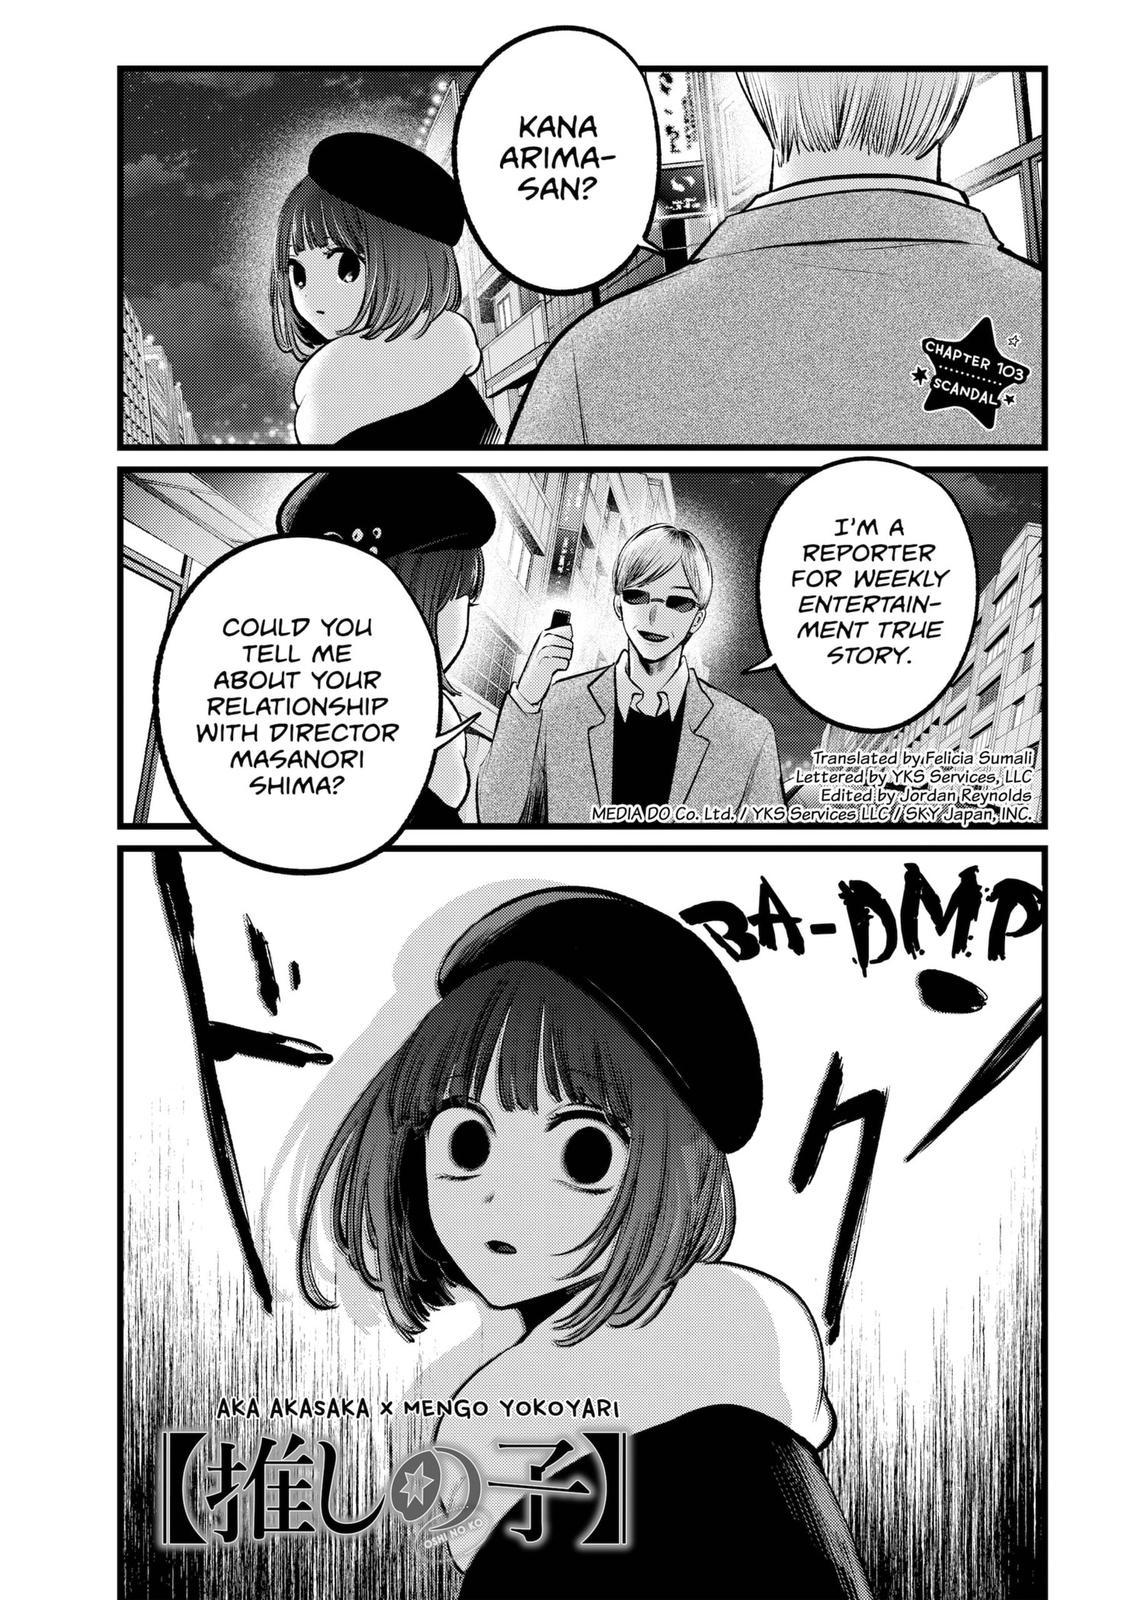 Oshi no ko, Chapter 1 - Oshi no ko Manga Online